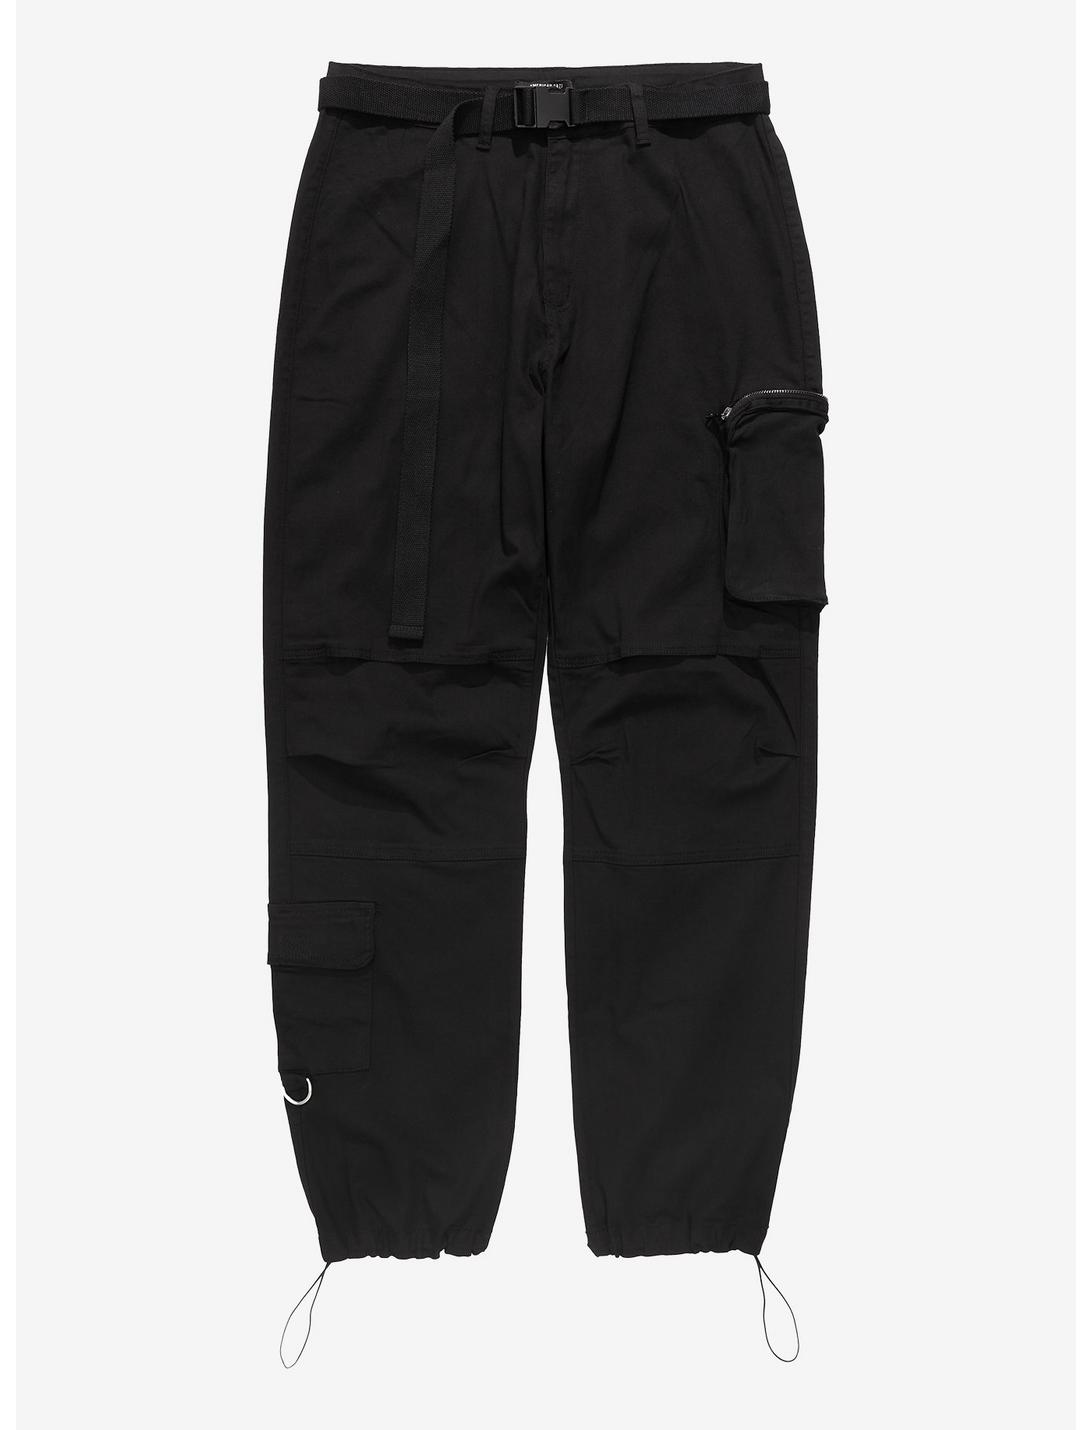 Black Buckle Belt Straight Leg Cargo Pants Plus Size, BLACK, hi-res